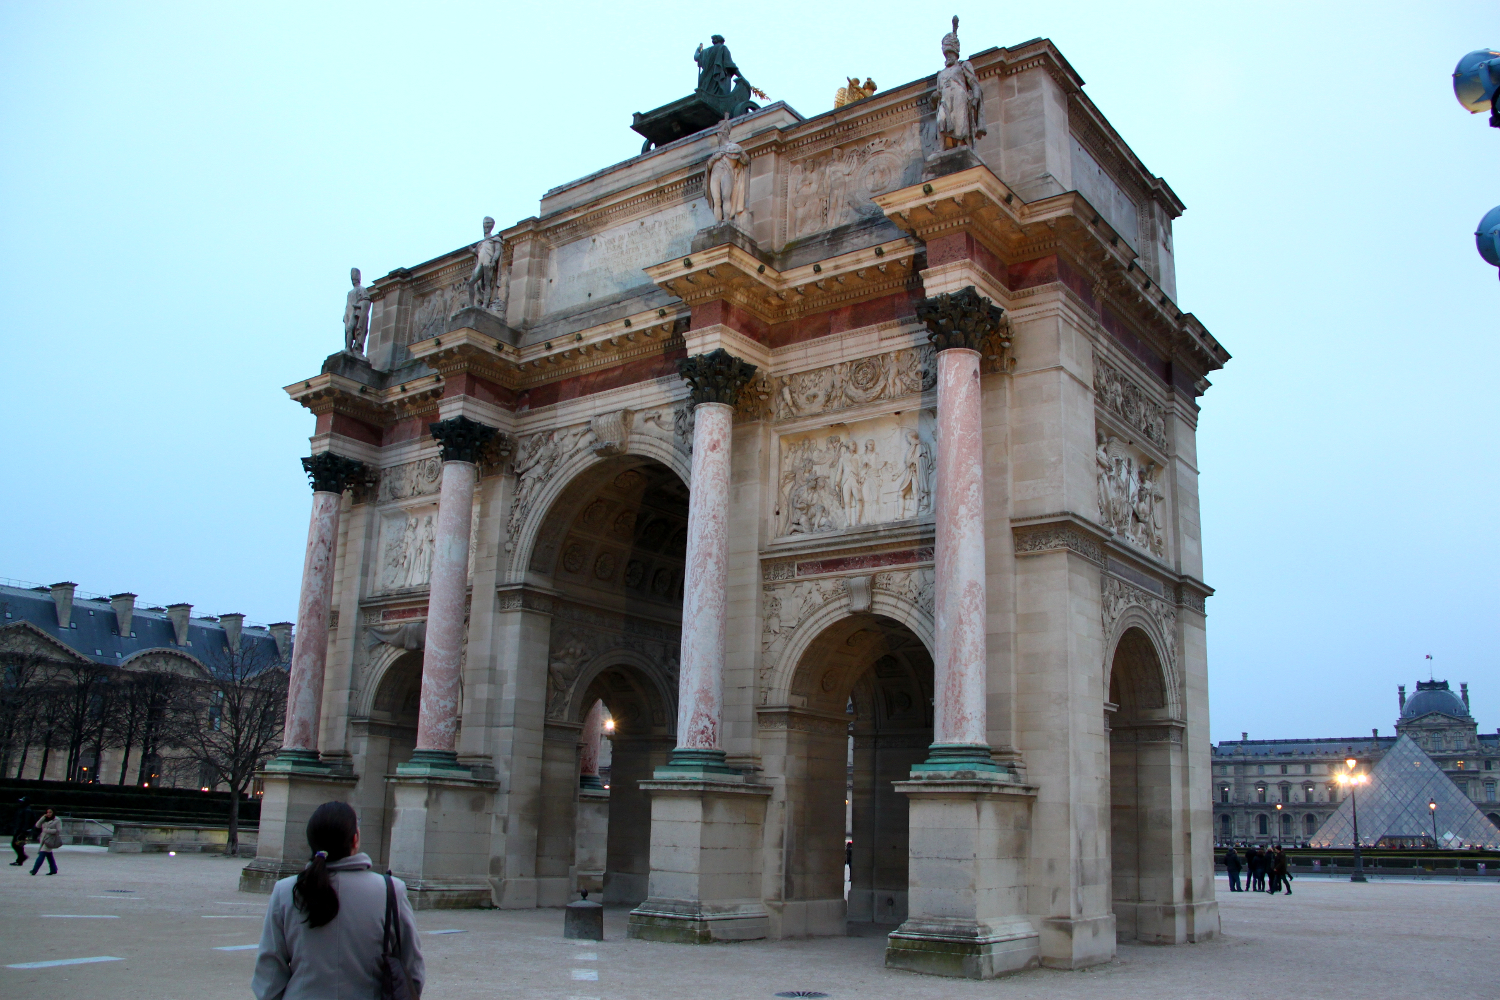 The Arc de Triomphe du Carrousel in Paris